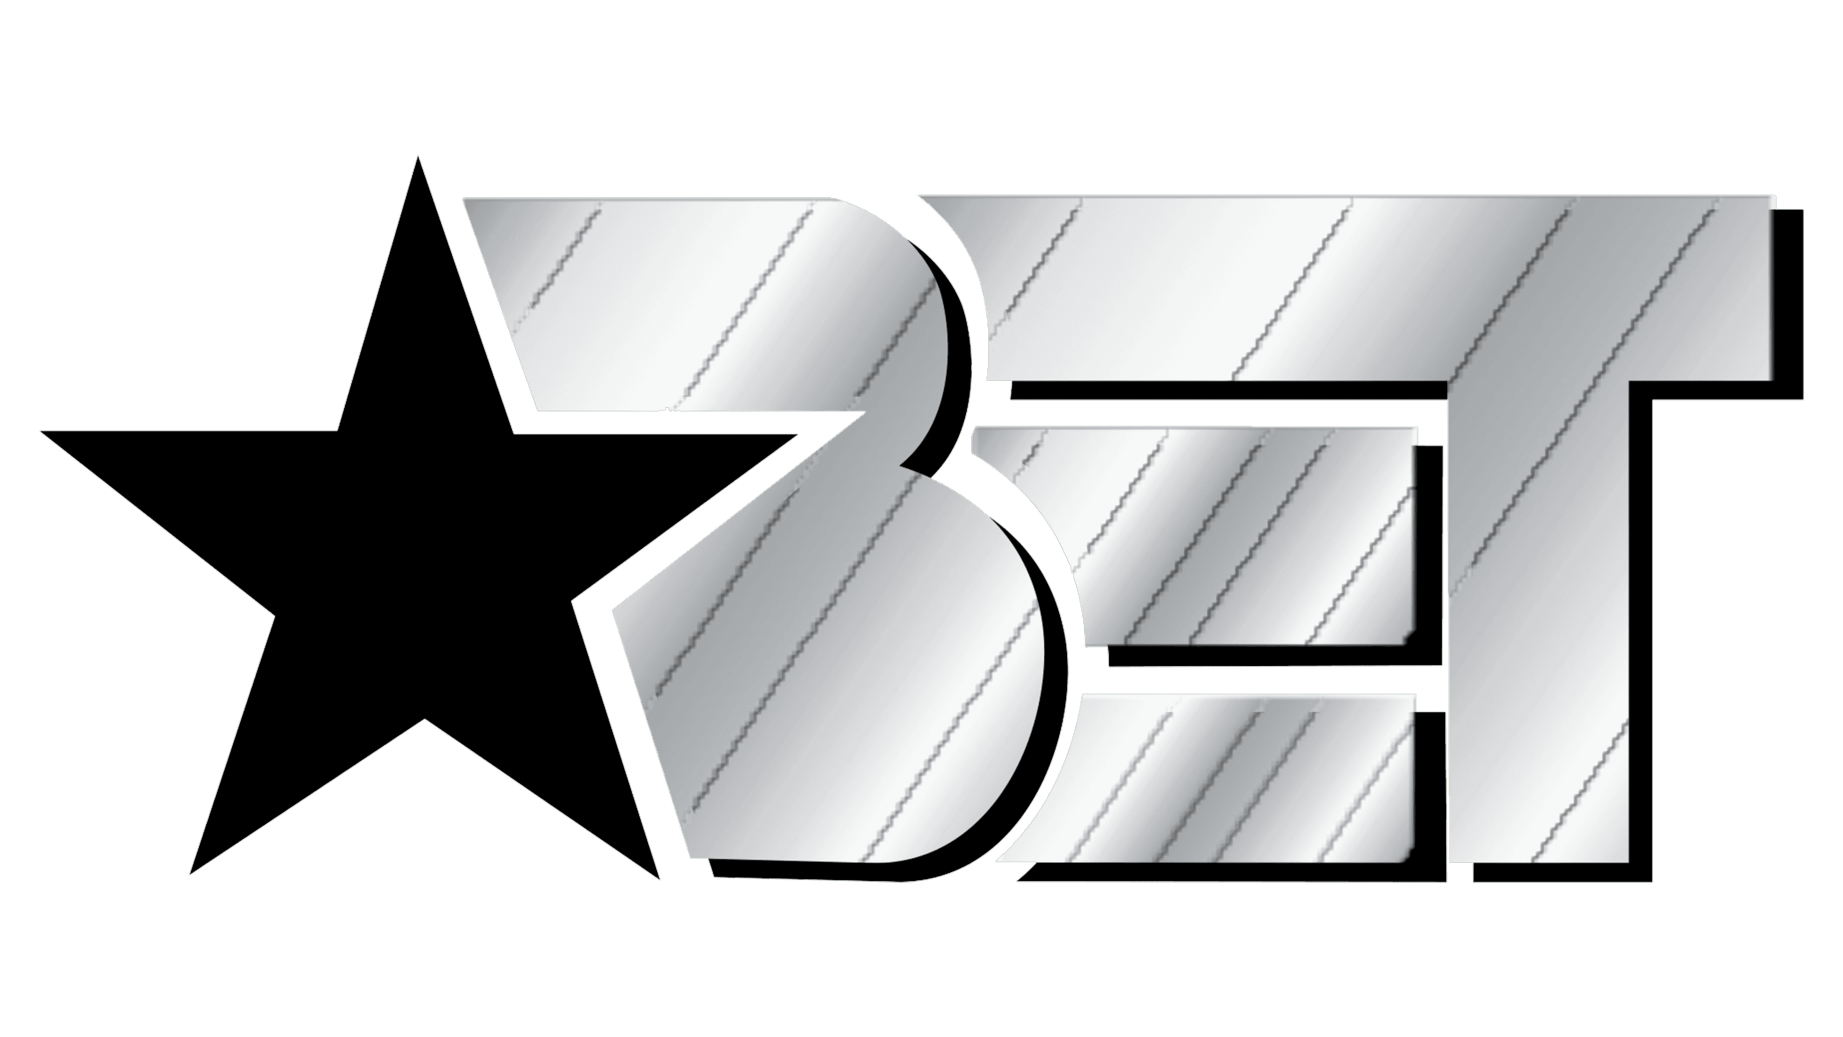 Bet symbol